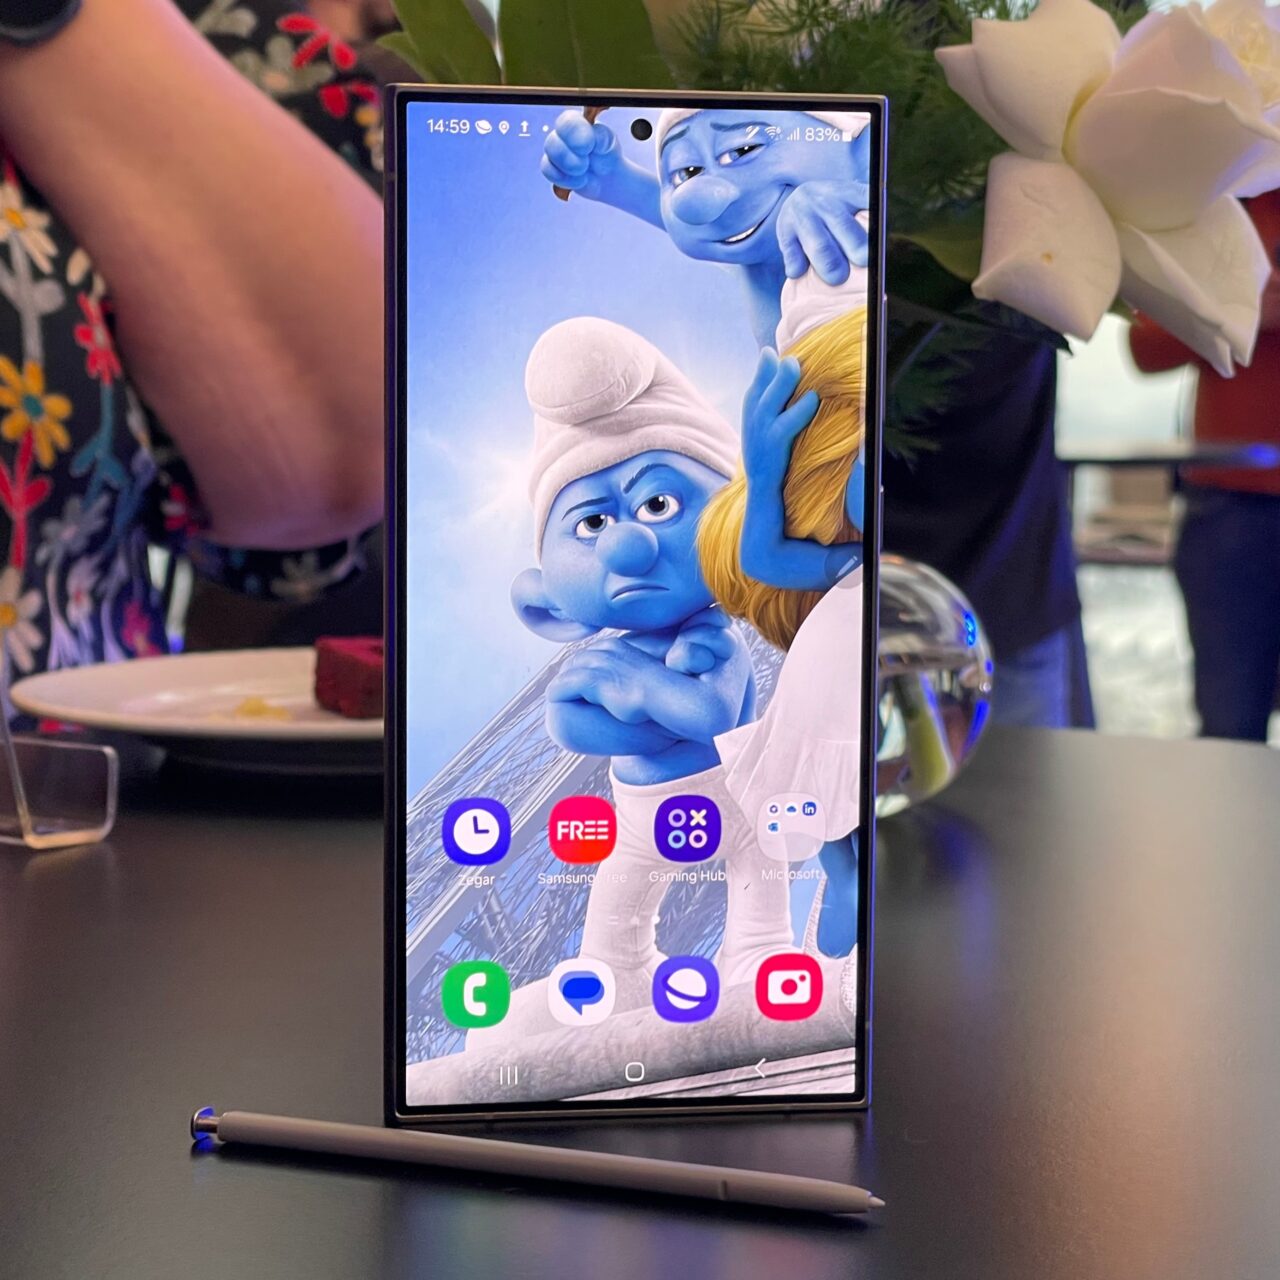 Smartfon stoi pionowo na stole z wyświetlanym tapetem przedstawiającym dwie postacie z animacji, w tle nieostre elementy wnętrza.